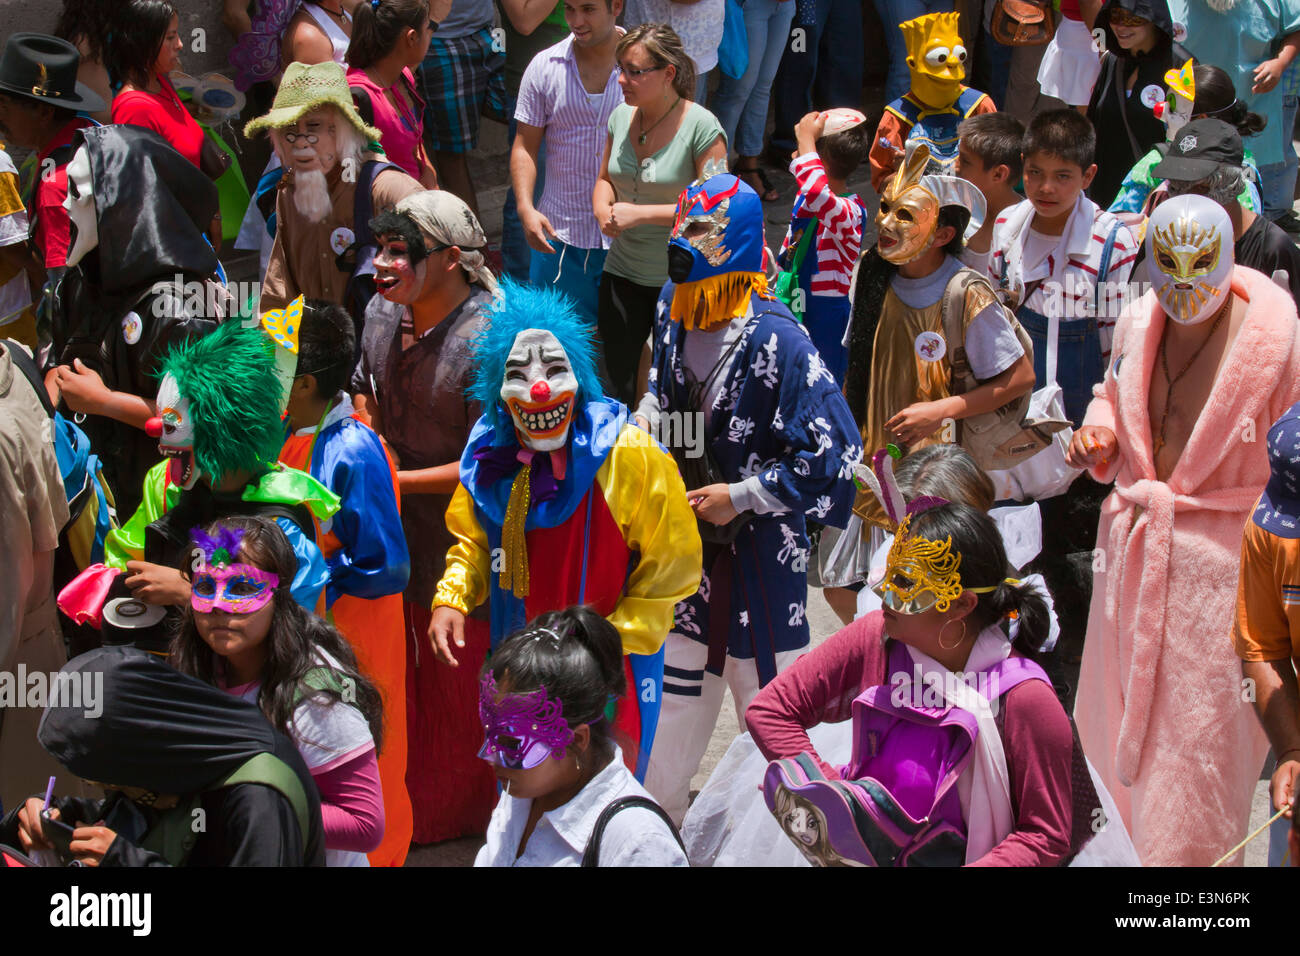 Mexicans dress in costumes and participate the DIA DE LOS LOCOS PARADE - SAN MIGUEL DE ALLENDE, GUANAJUATO, MEXICO Stock Photo